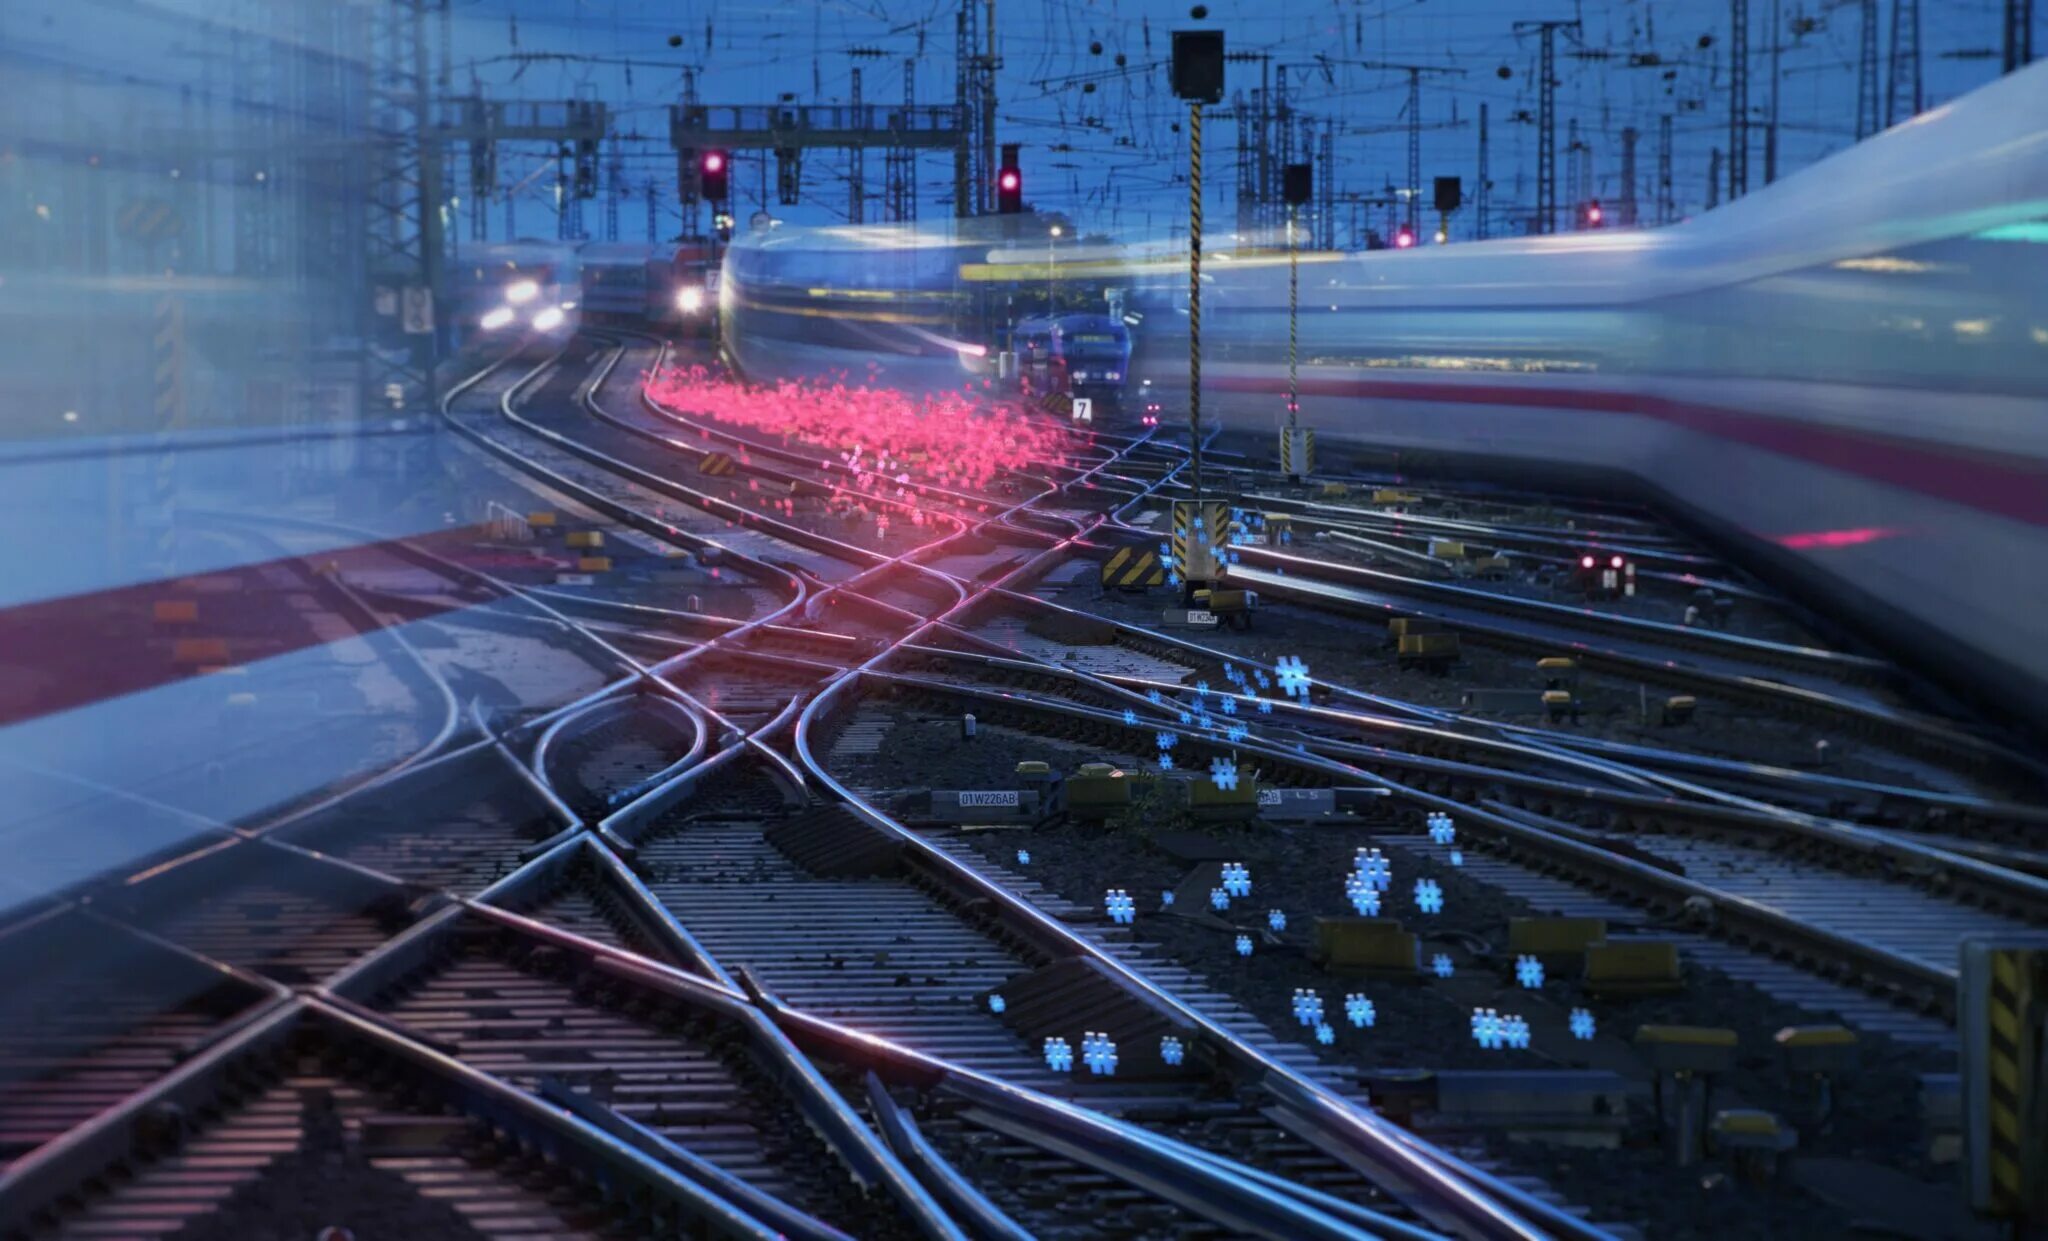 Включи железную станцию. Цифровая Железнодорожная станция проект РЖД. Инновации на Железнодорожном транспорте. Инфраструктура железных дорог. Железная дорога инновации.